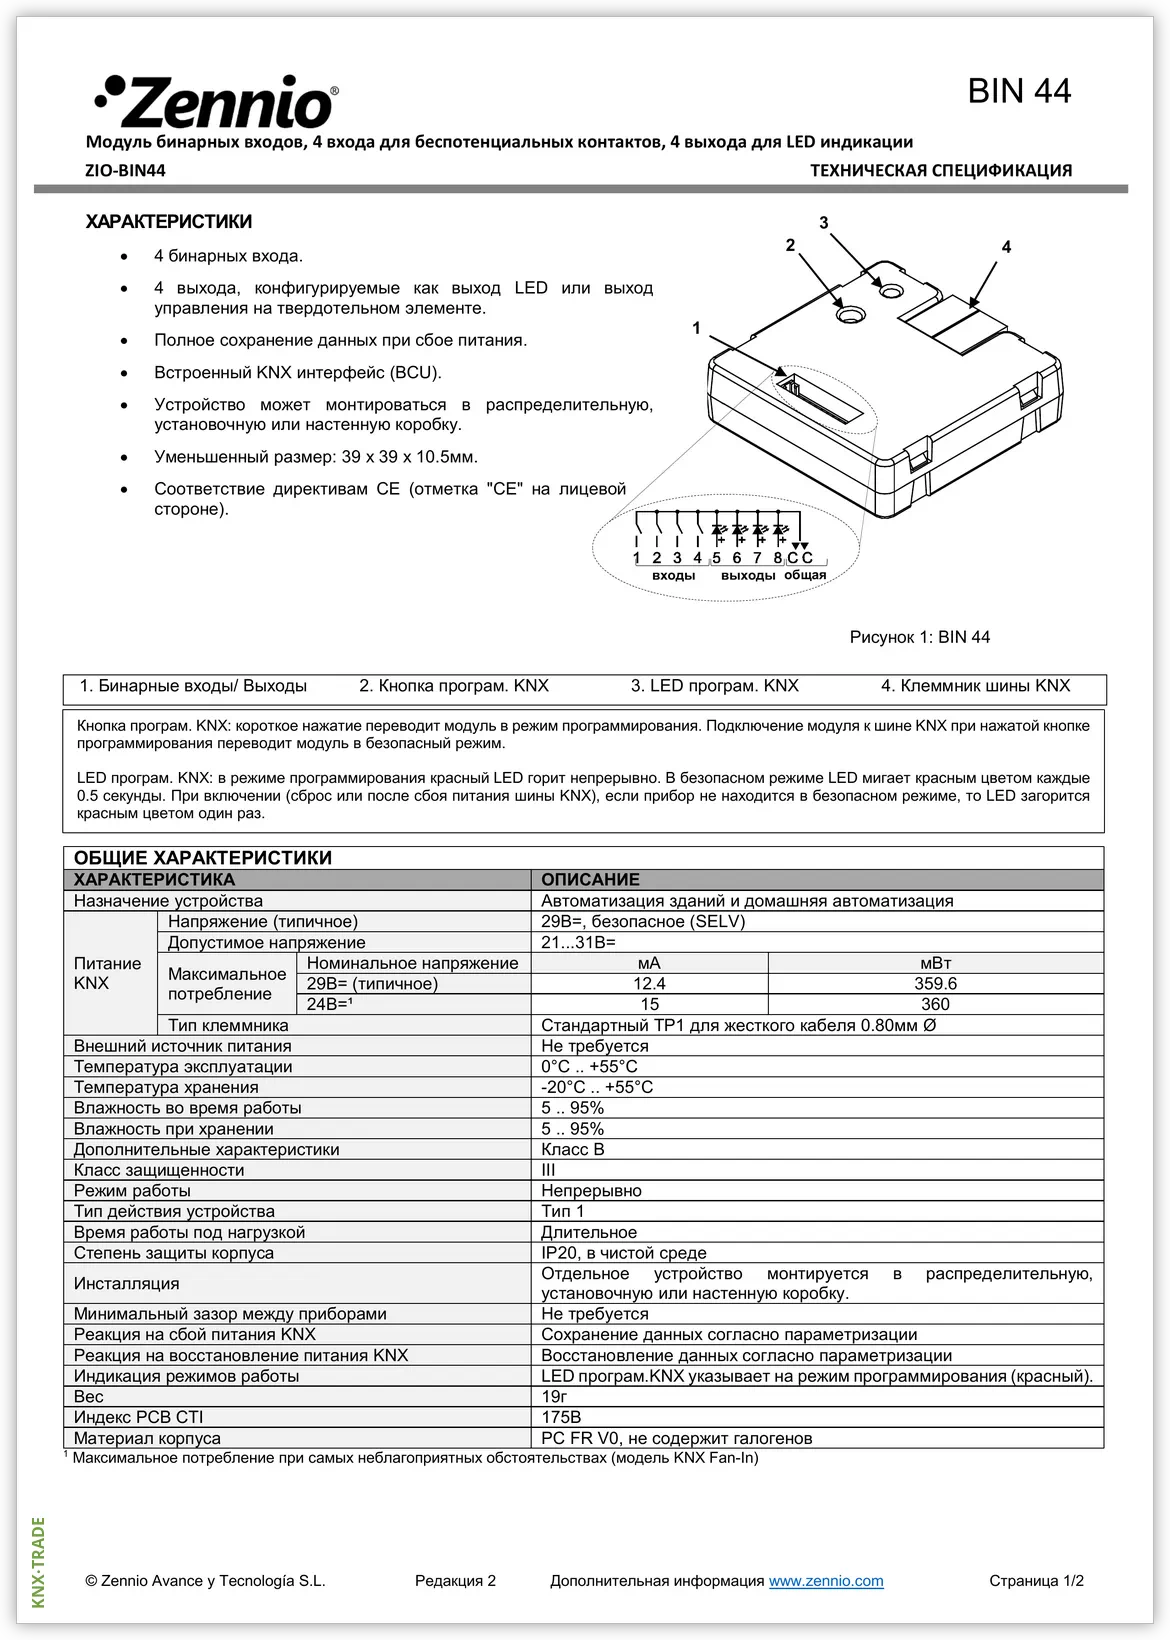 Datasheet (1) Zennio [ZIO-BIN44] BIN 44 / Модуль KNX универсальный, 4 дискретных входа и 4 выхода контроля LED